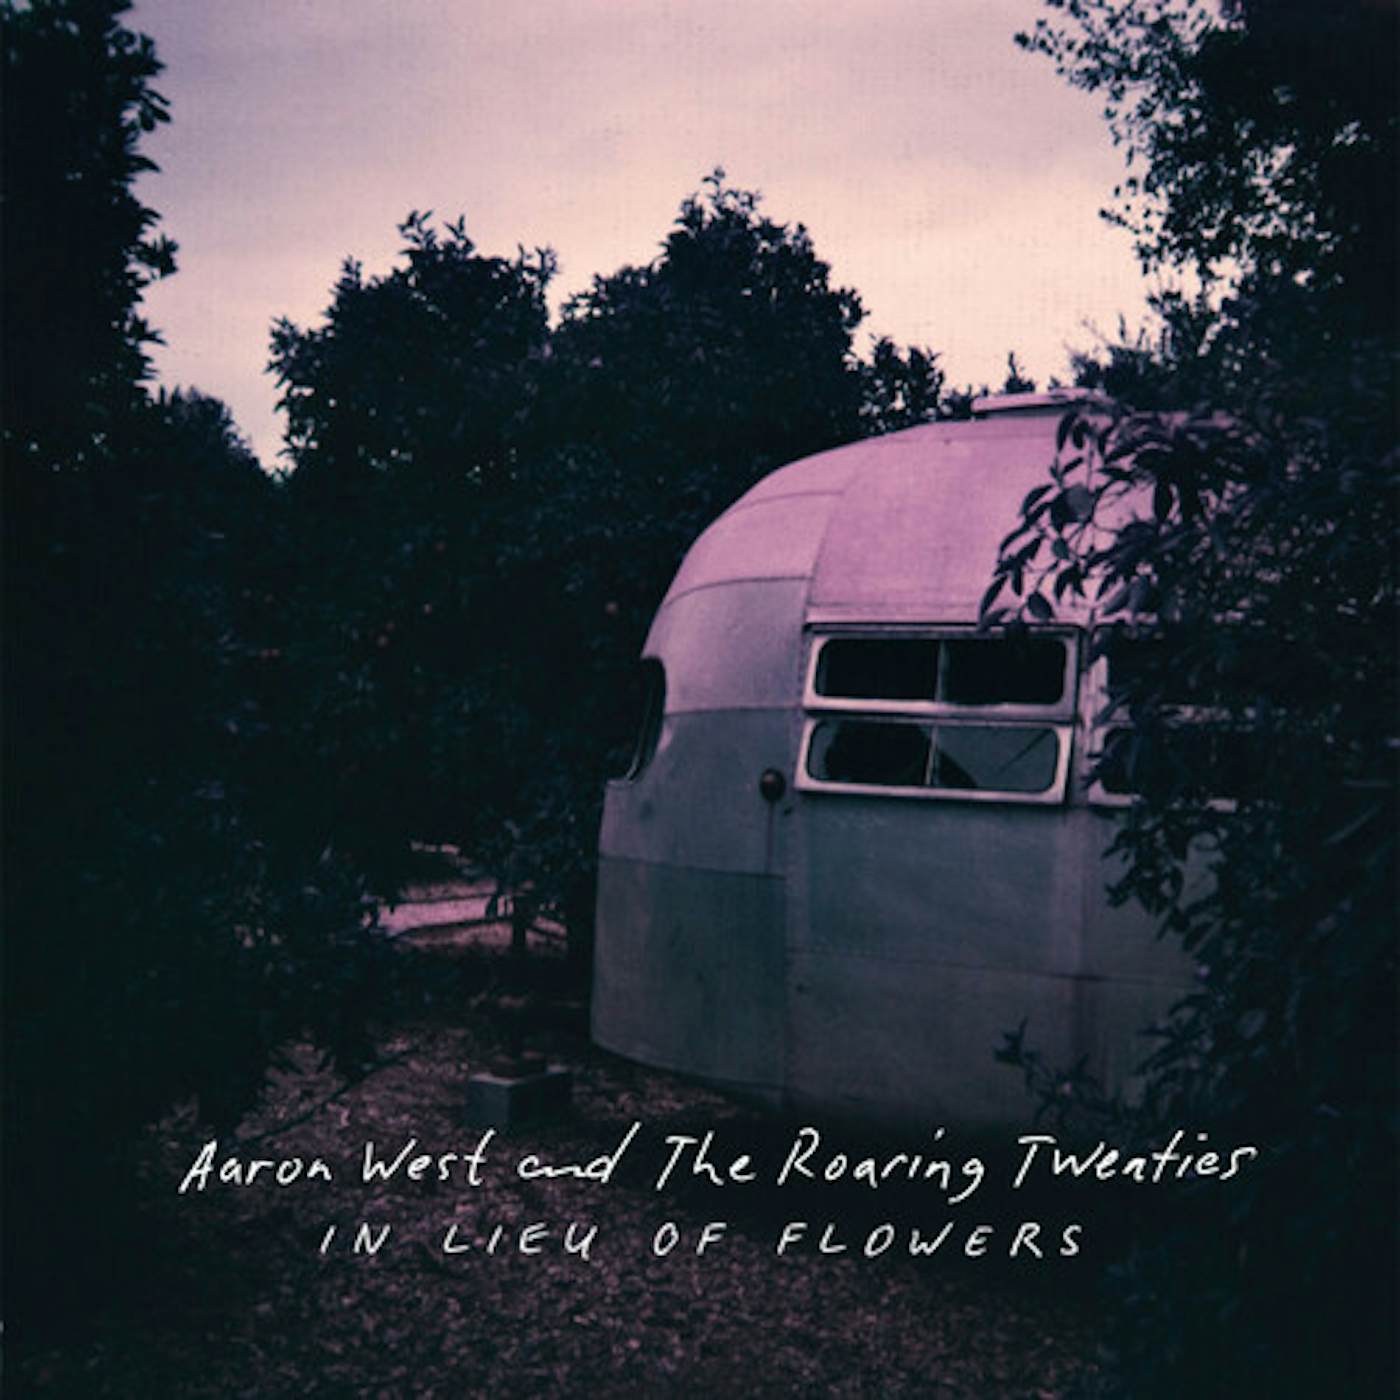 Aaron West and The Roaring Twenties IN LIEU OF FLOWERS CD